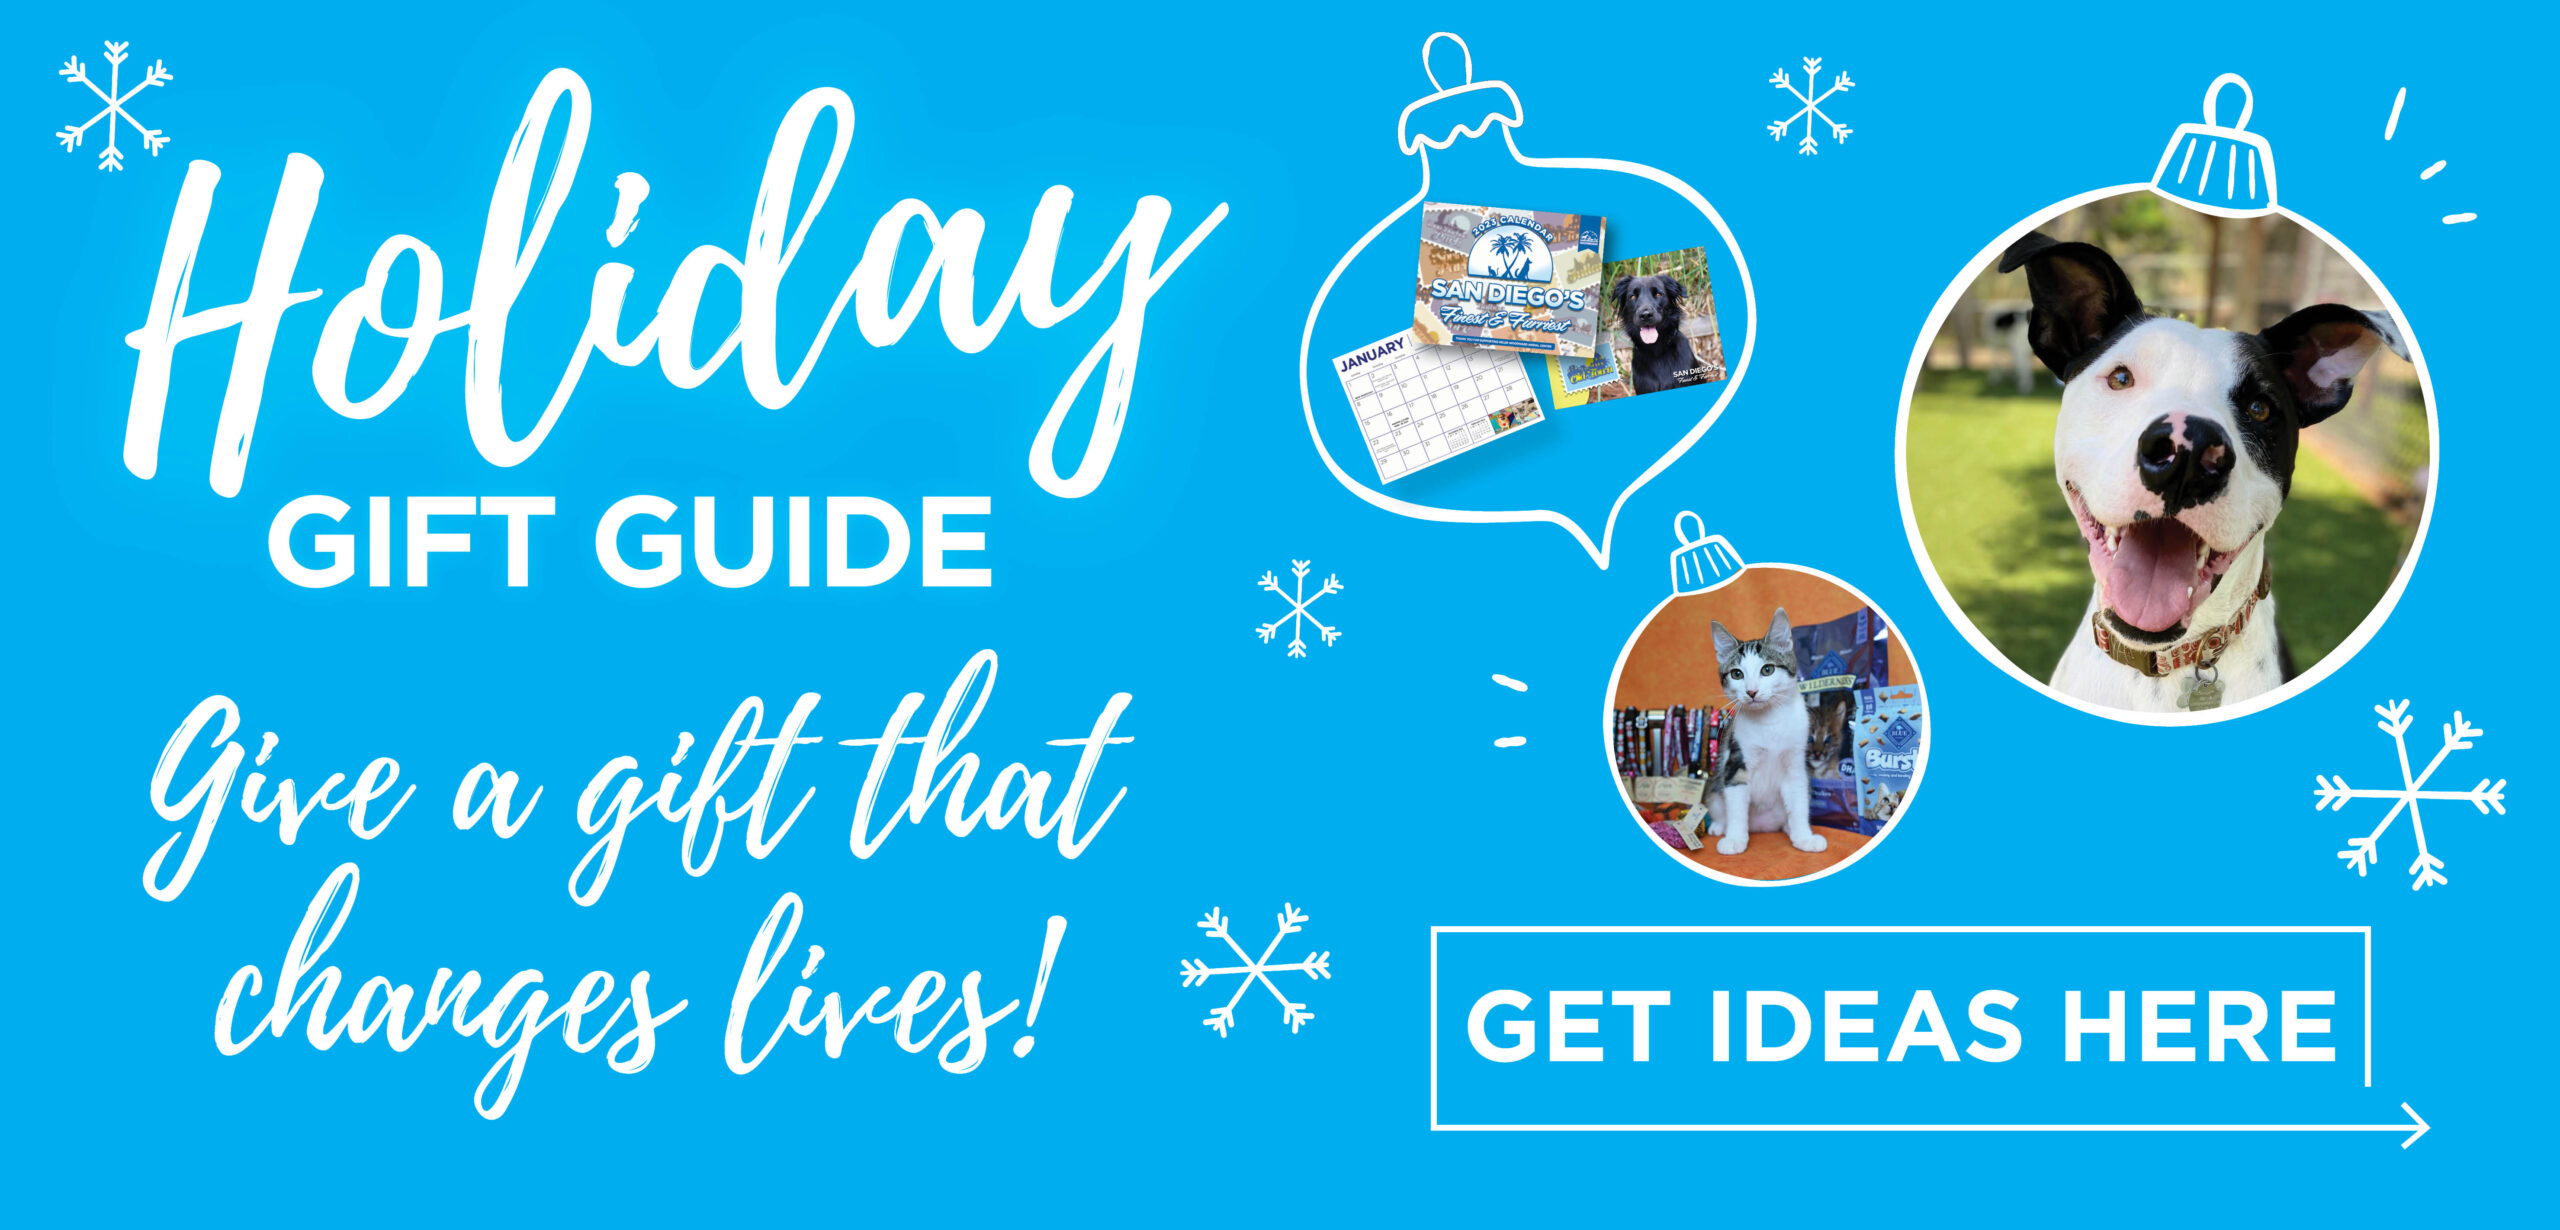 DV22_Holiday Gift Guide_Slider